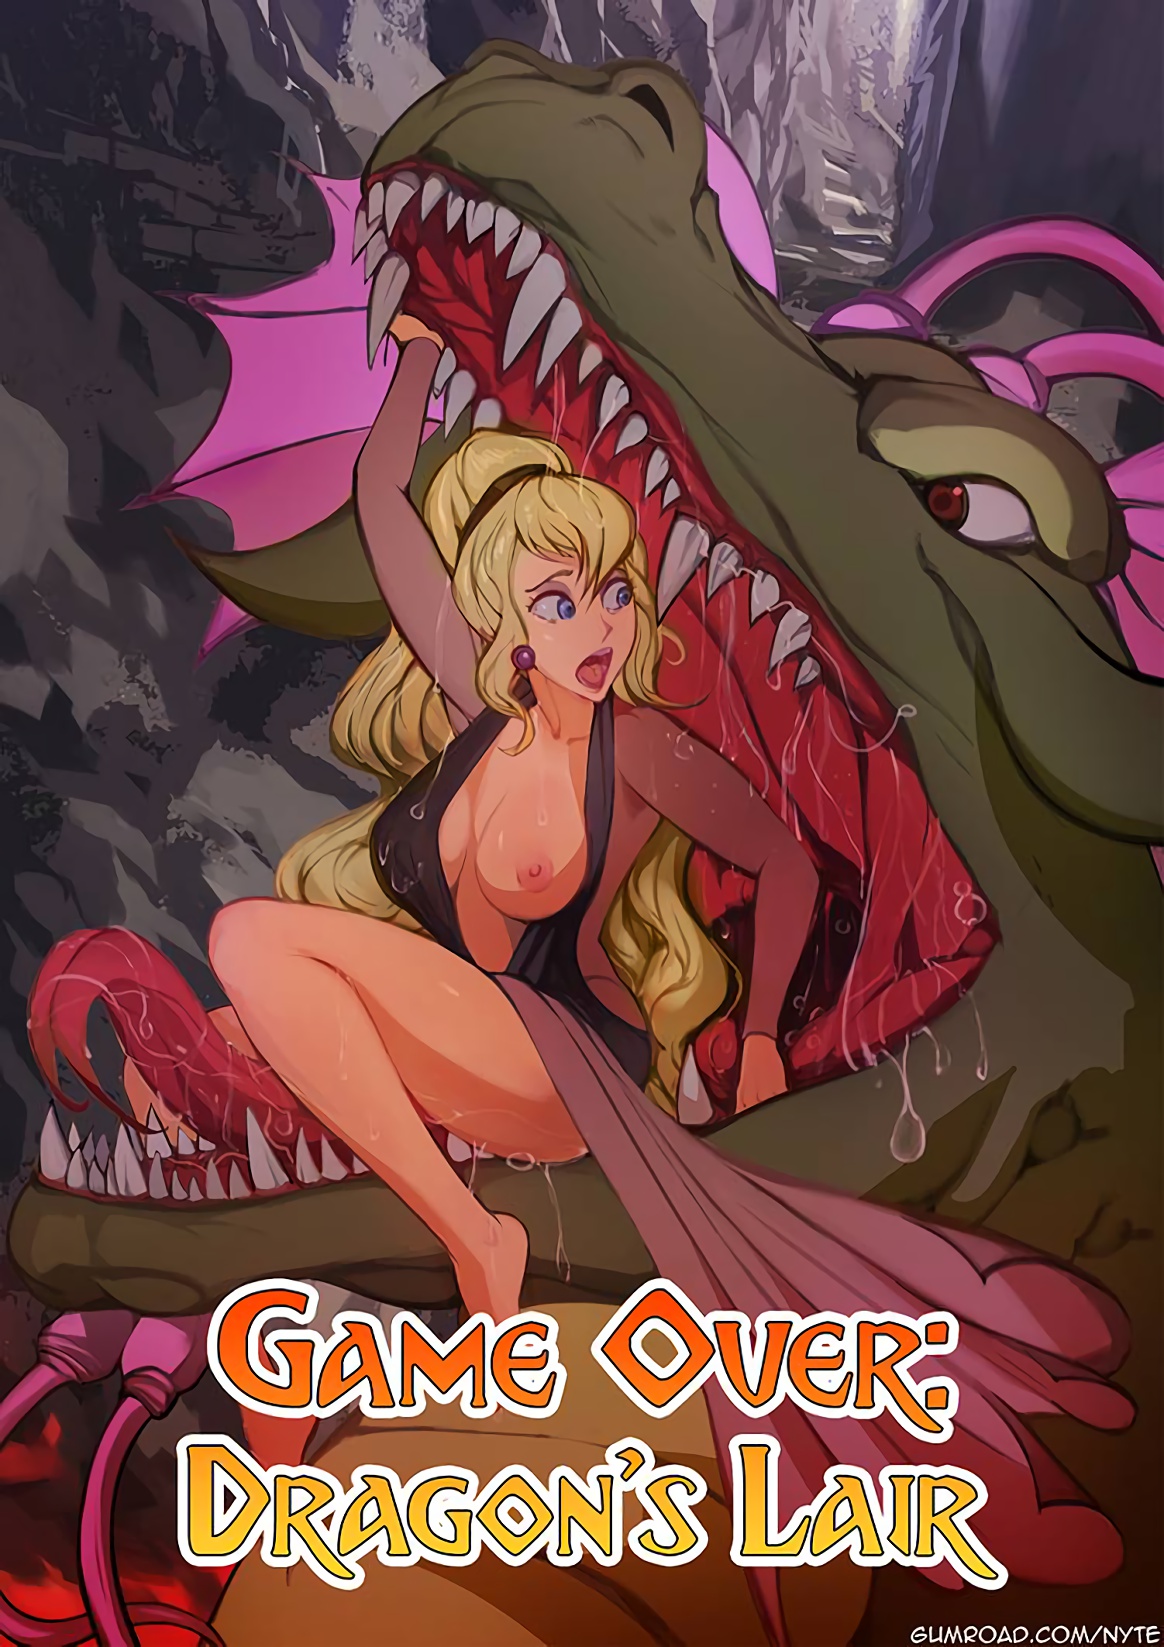 Game Over- Dragon's Lair (nyte) 7 images. Dragon porn comics.